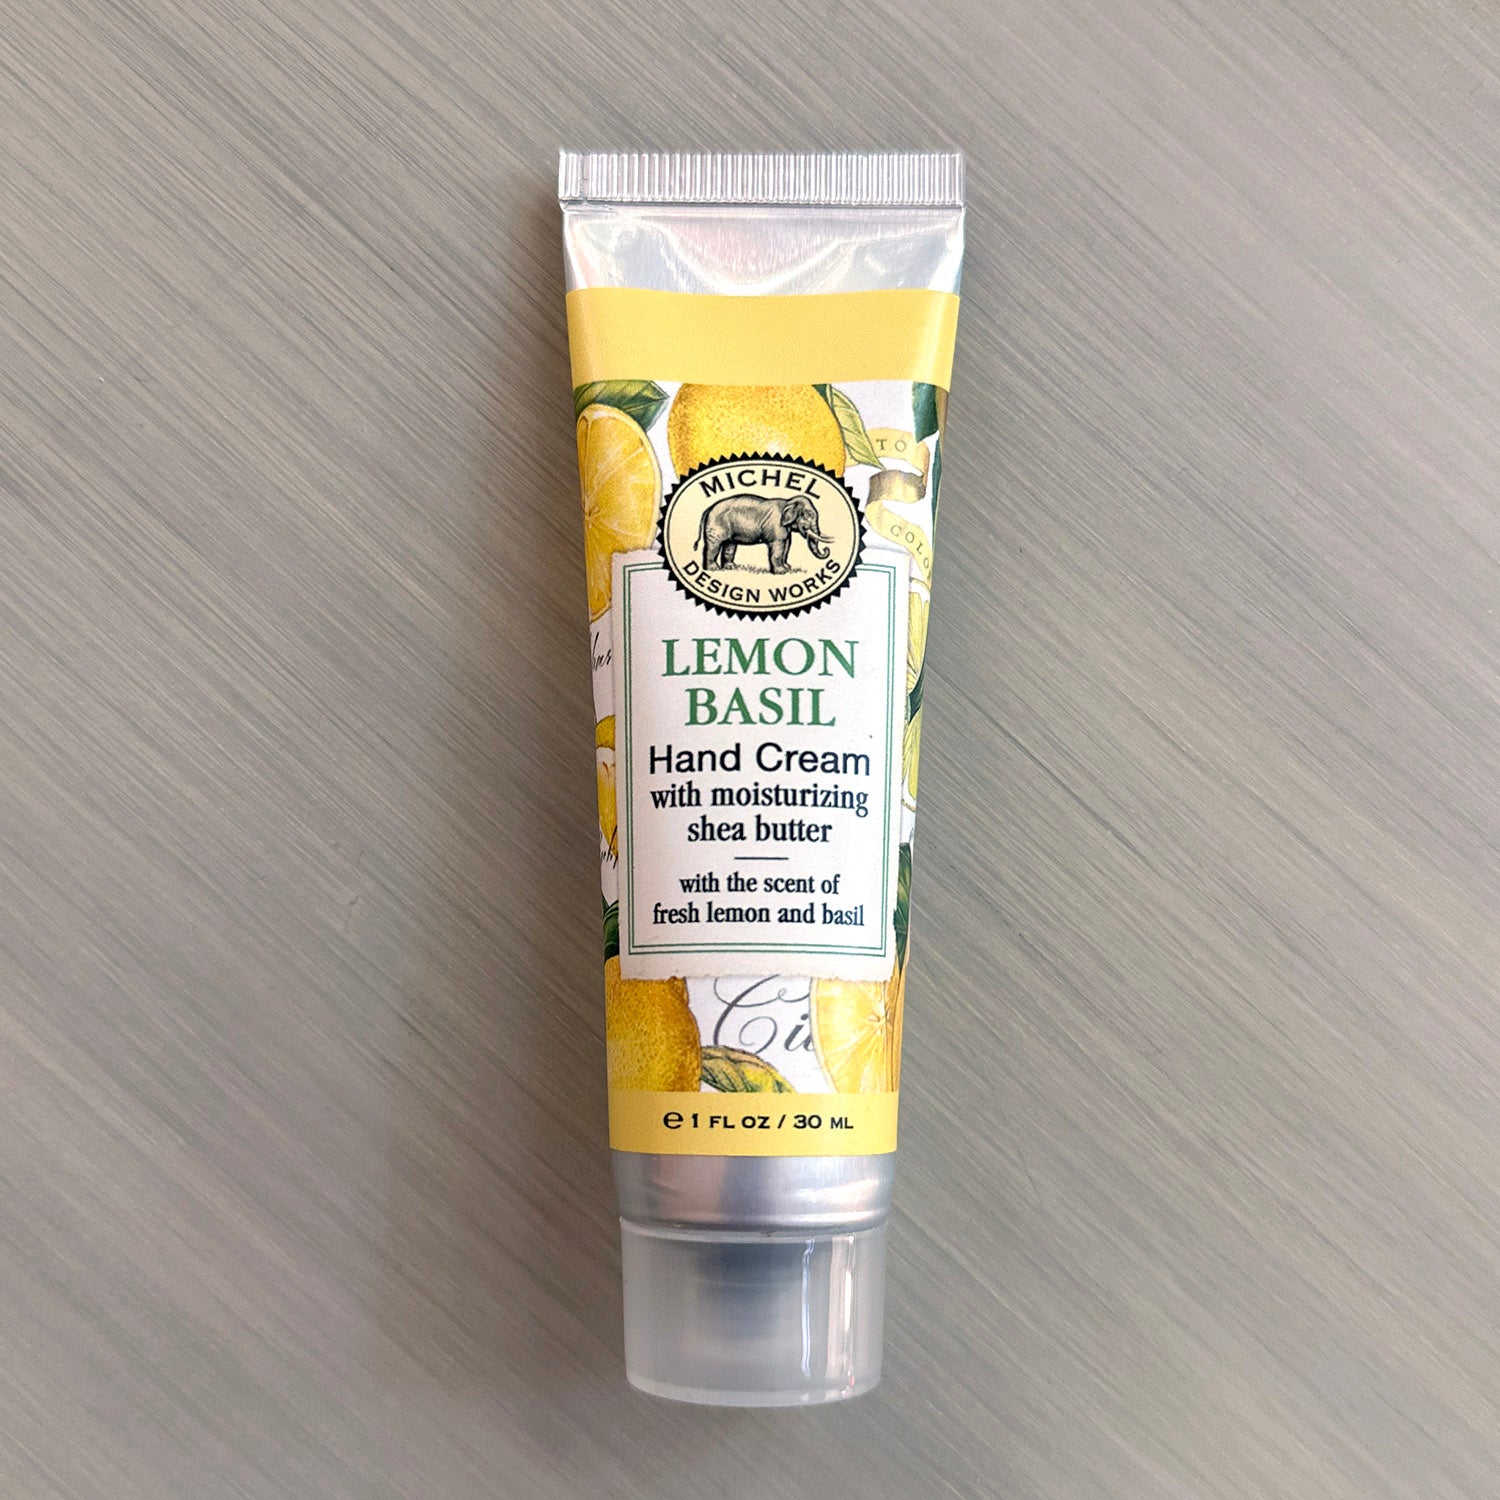 Hand Cream 1oz: Lemon Basil